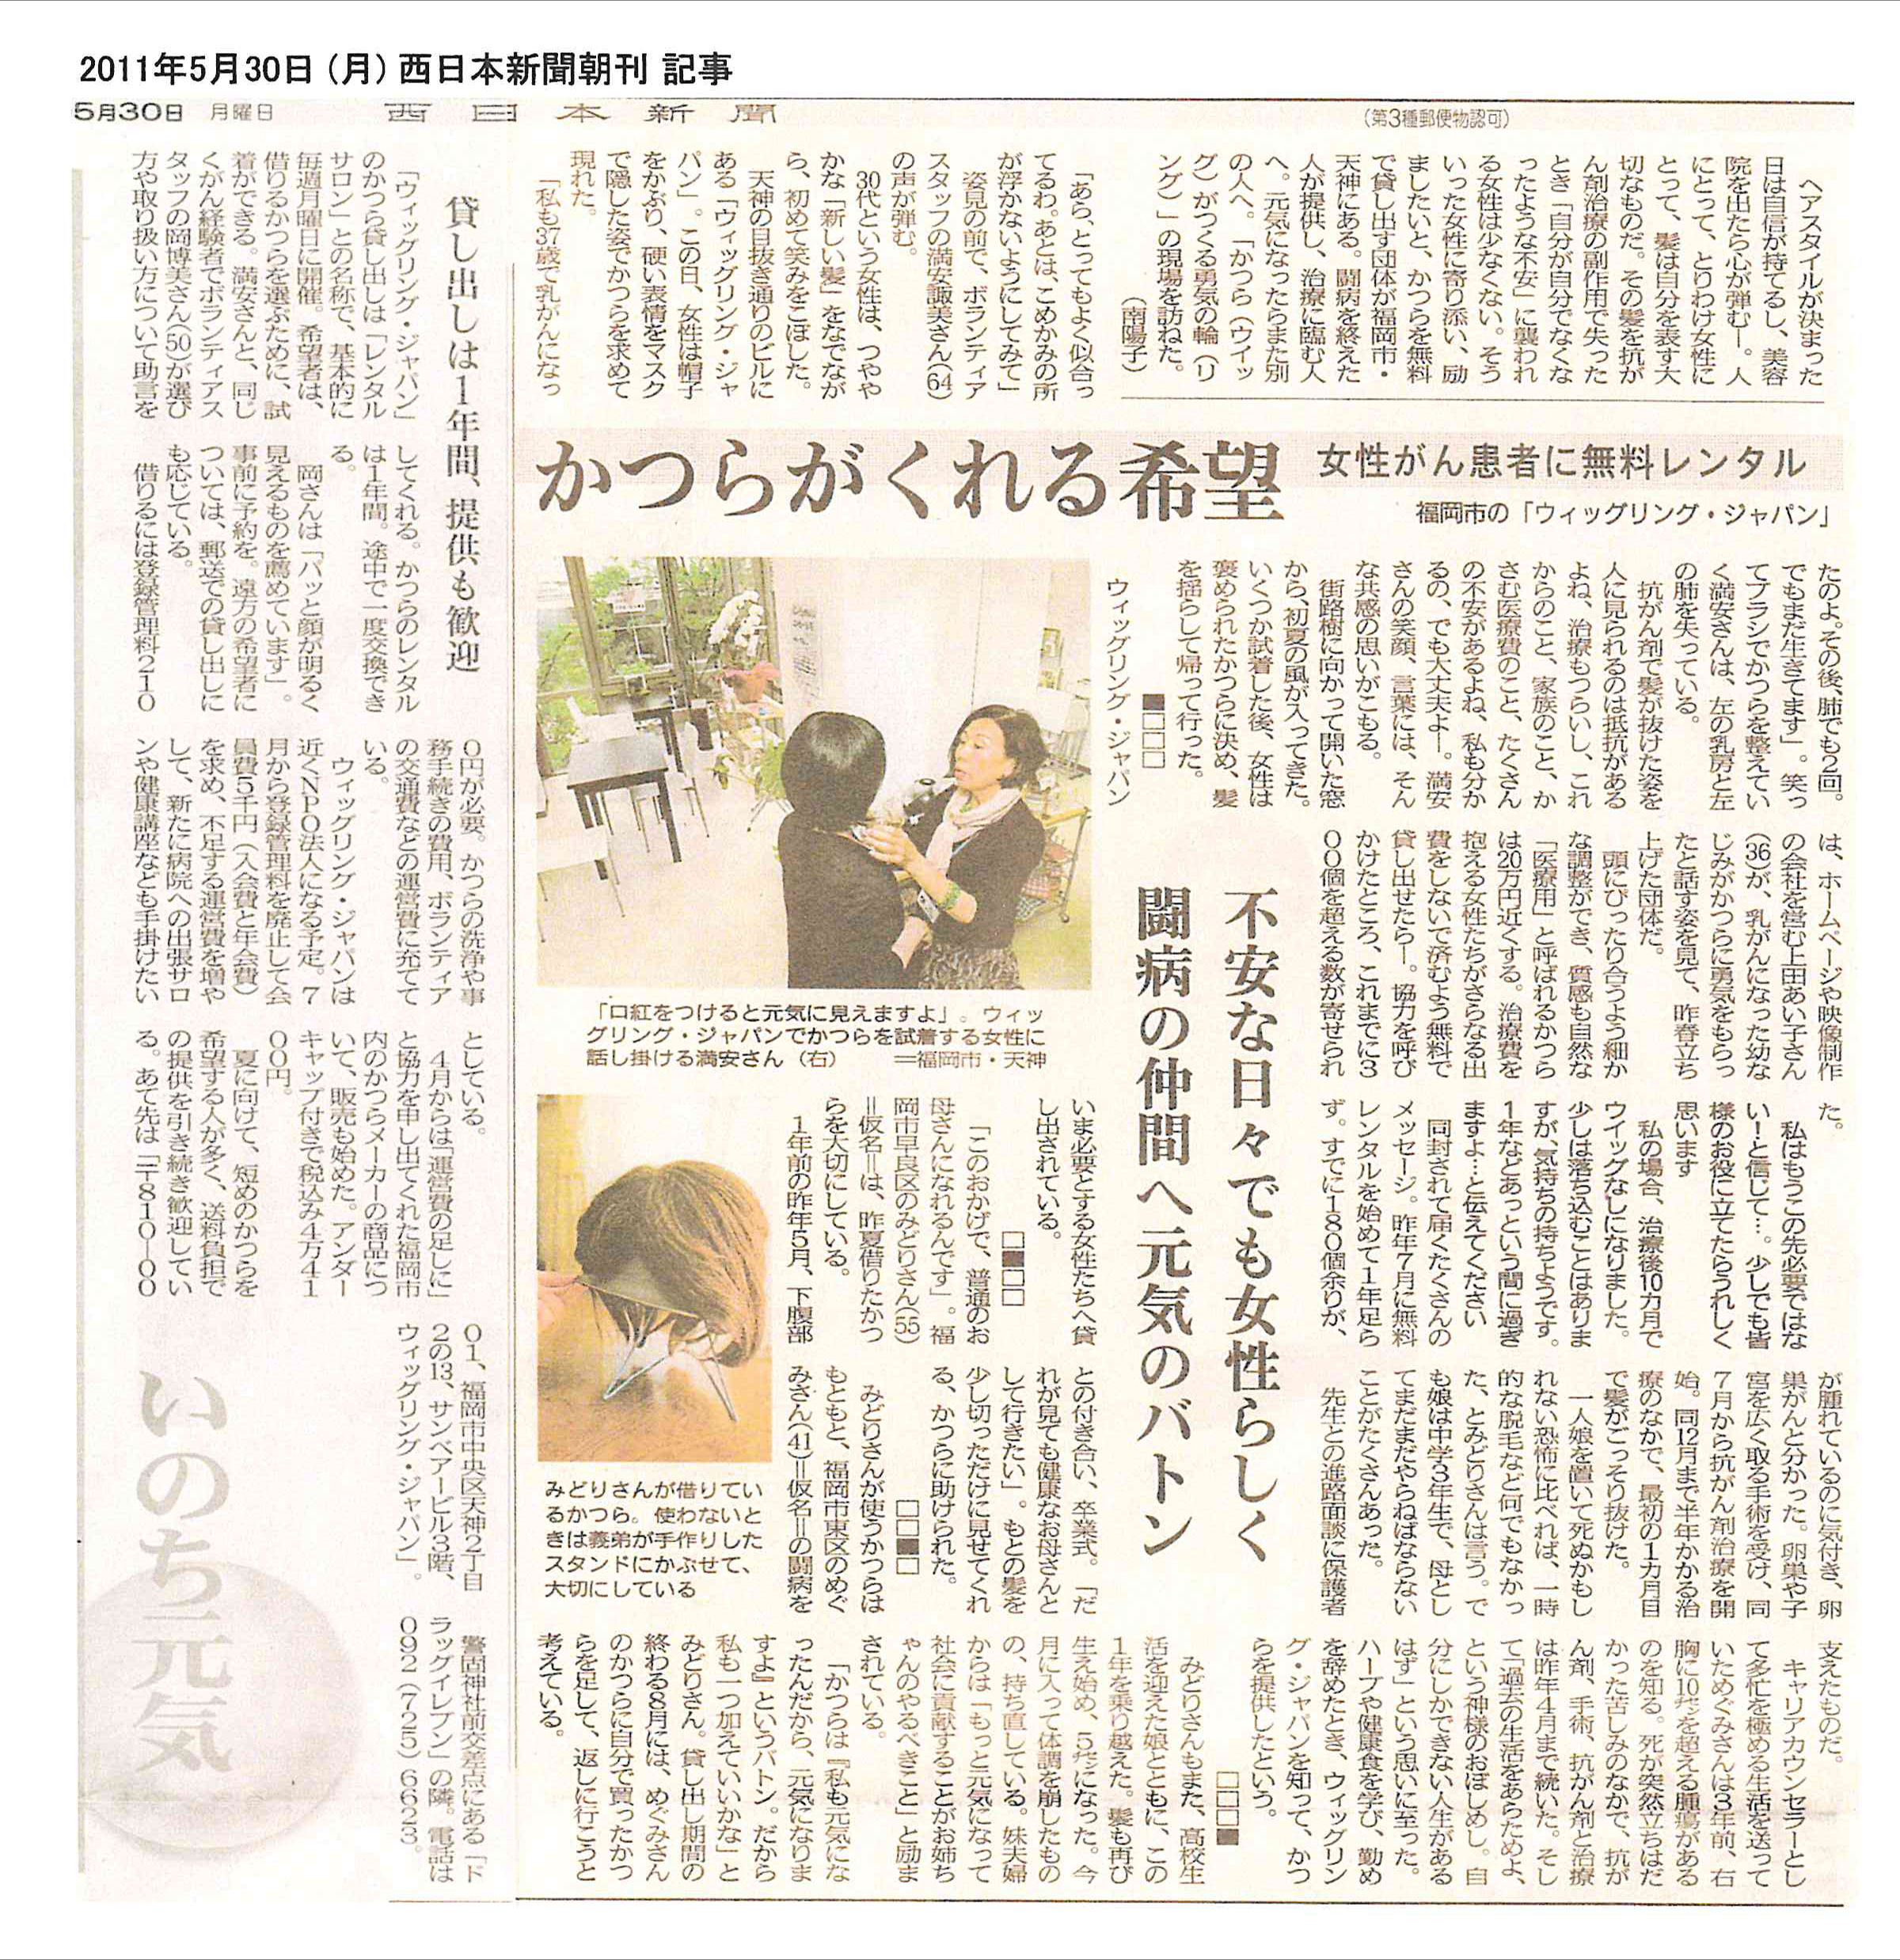 11年5月30日 月 西日本新聞朝刊で紹介されました Npo法人 ウィッグリング ジャパン オフィシャルウェブサイト